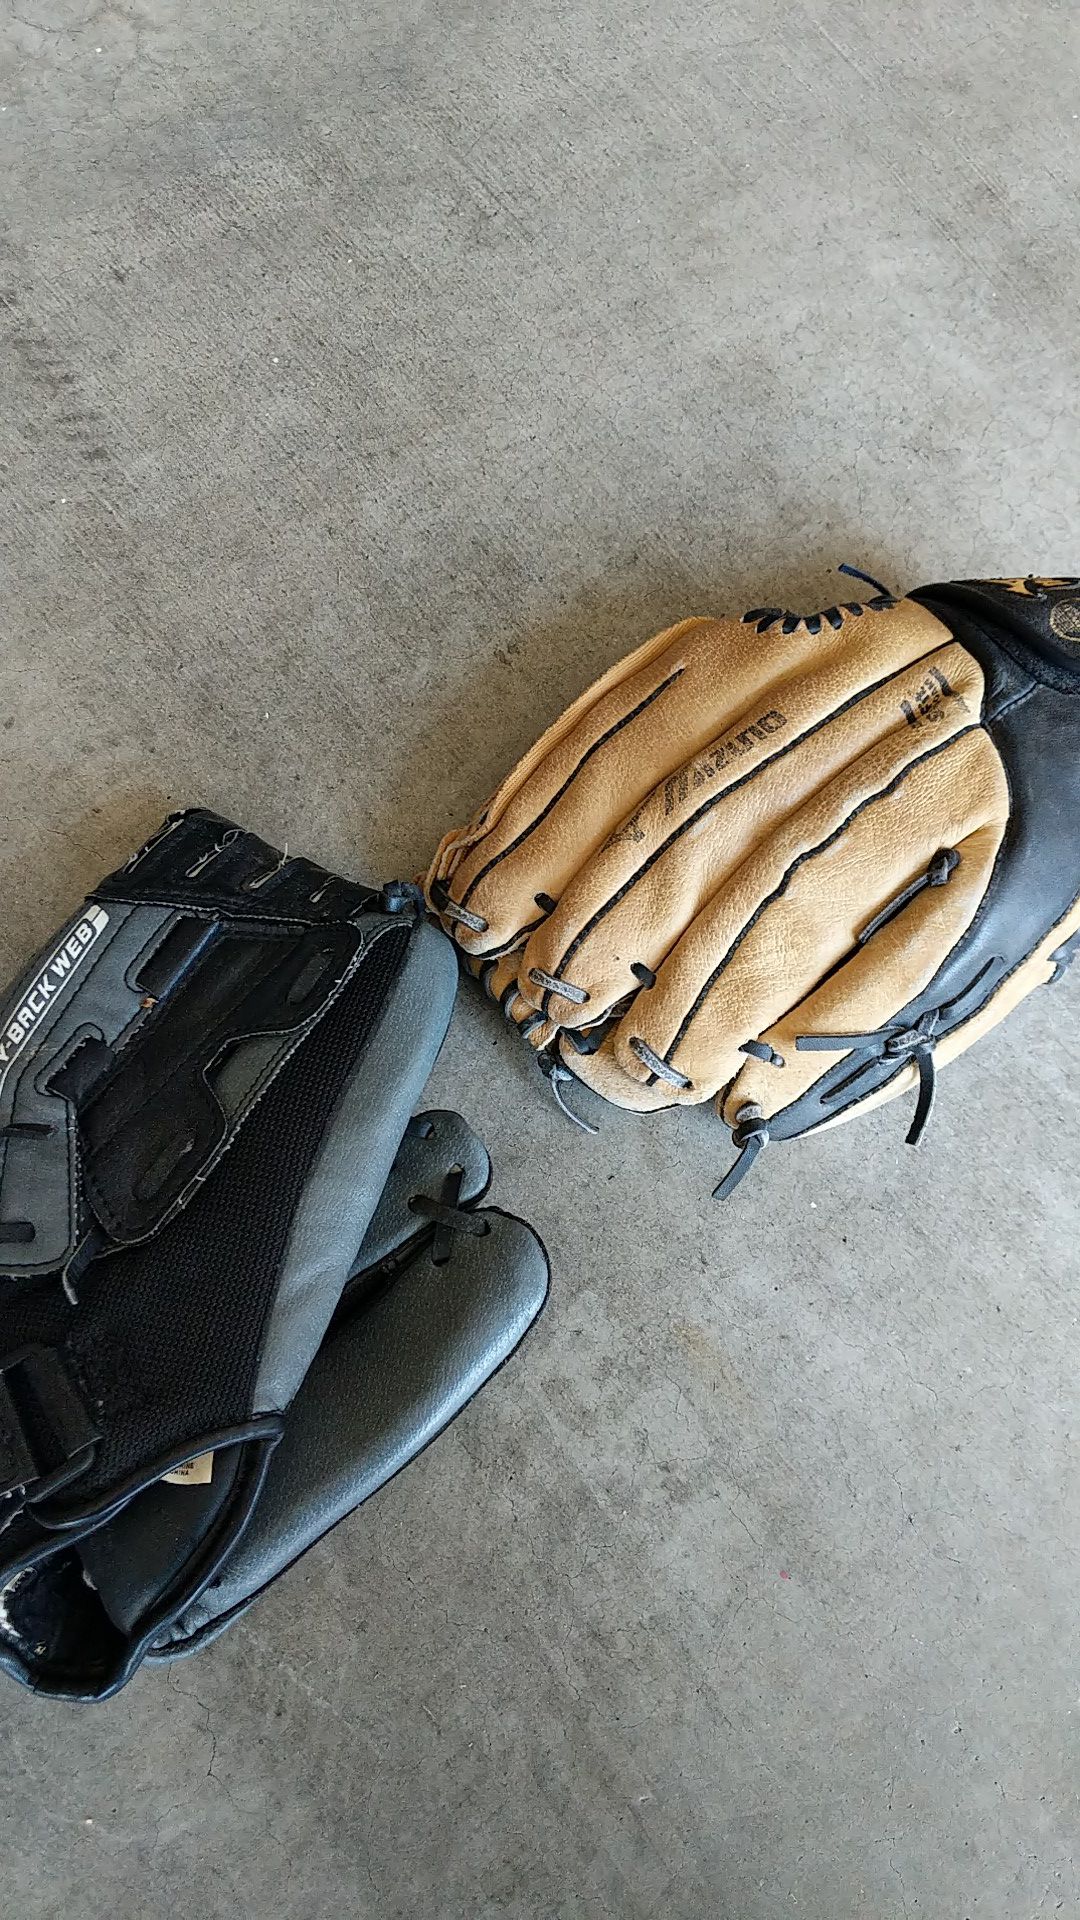 Two children baseball gloves